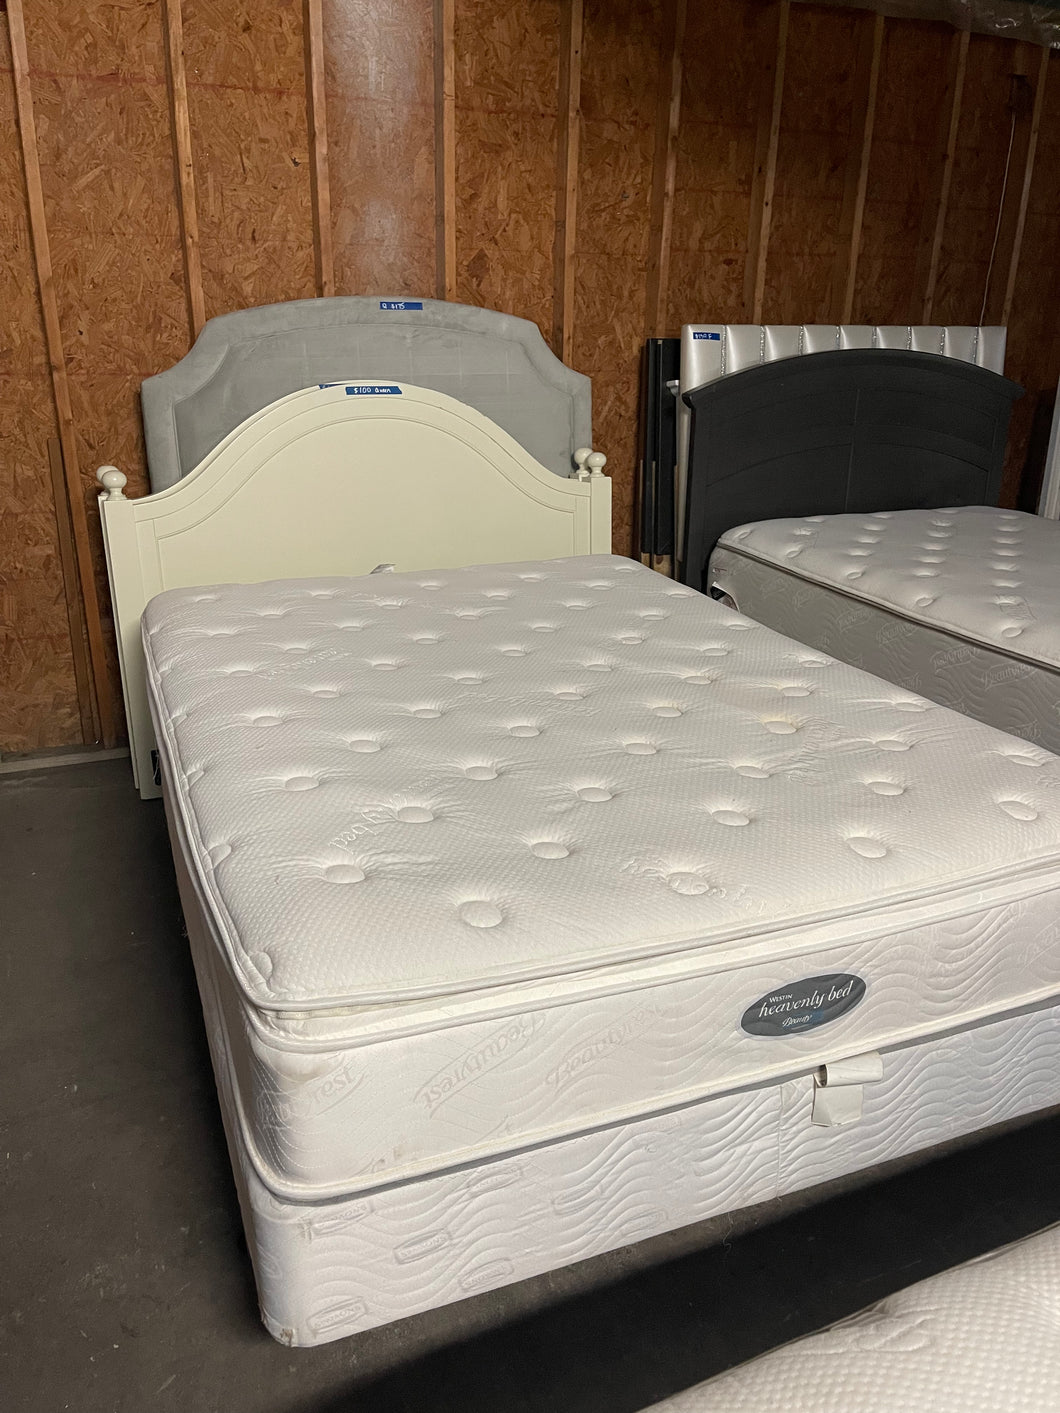 Pillow Top Queen mattress and box spring